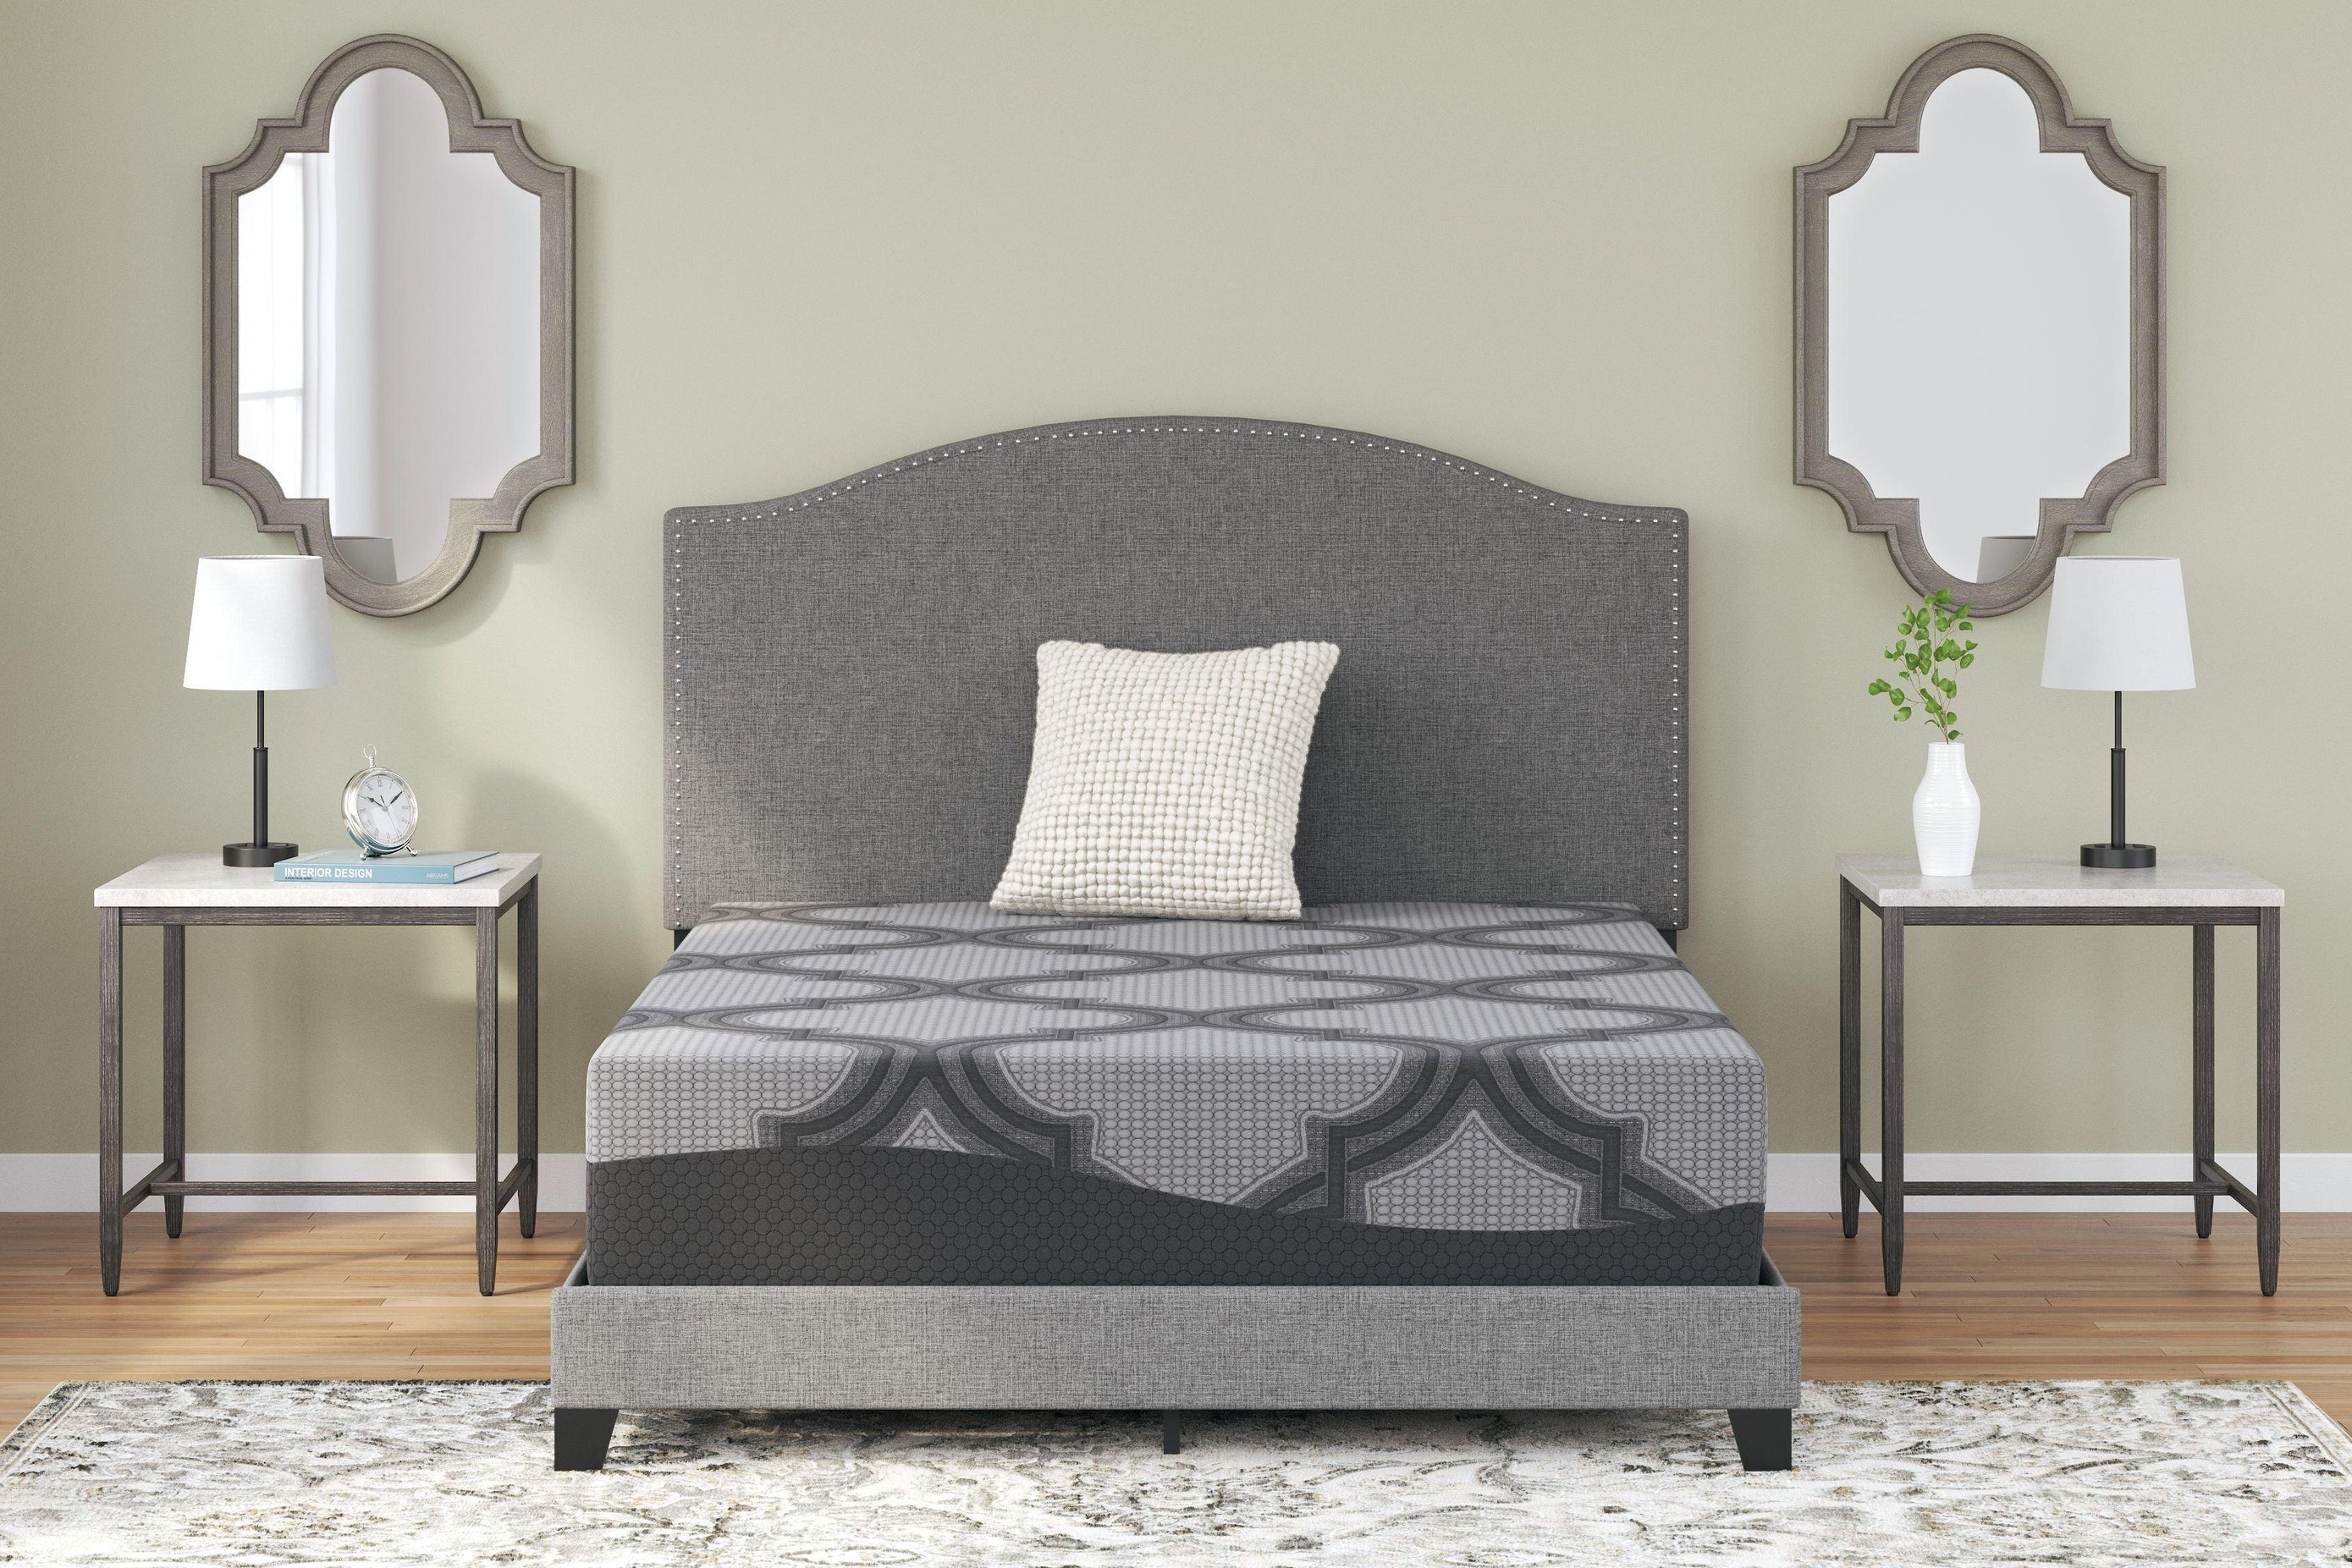 Ashley Furniture - Ashley Sleep - Hybrid Mattress - 5th Avenue Furniture